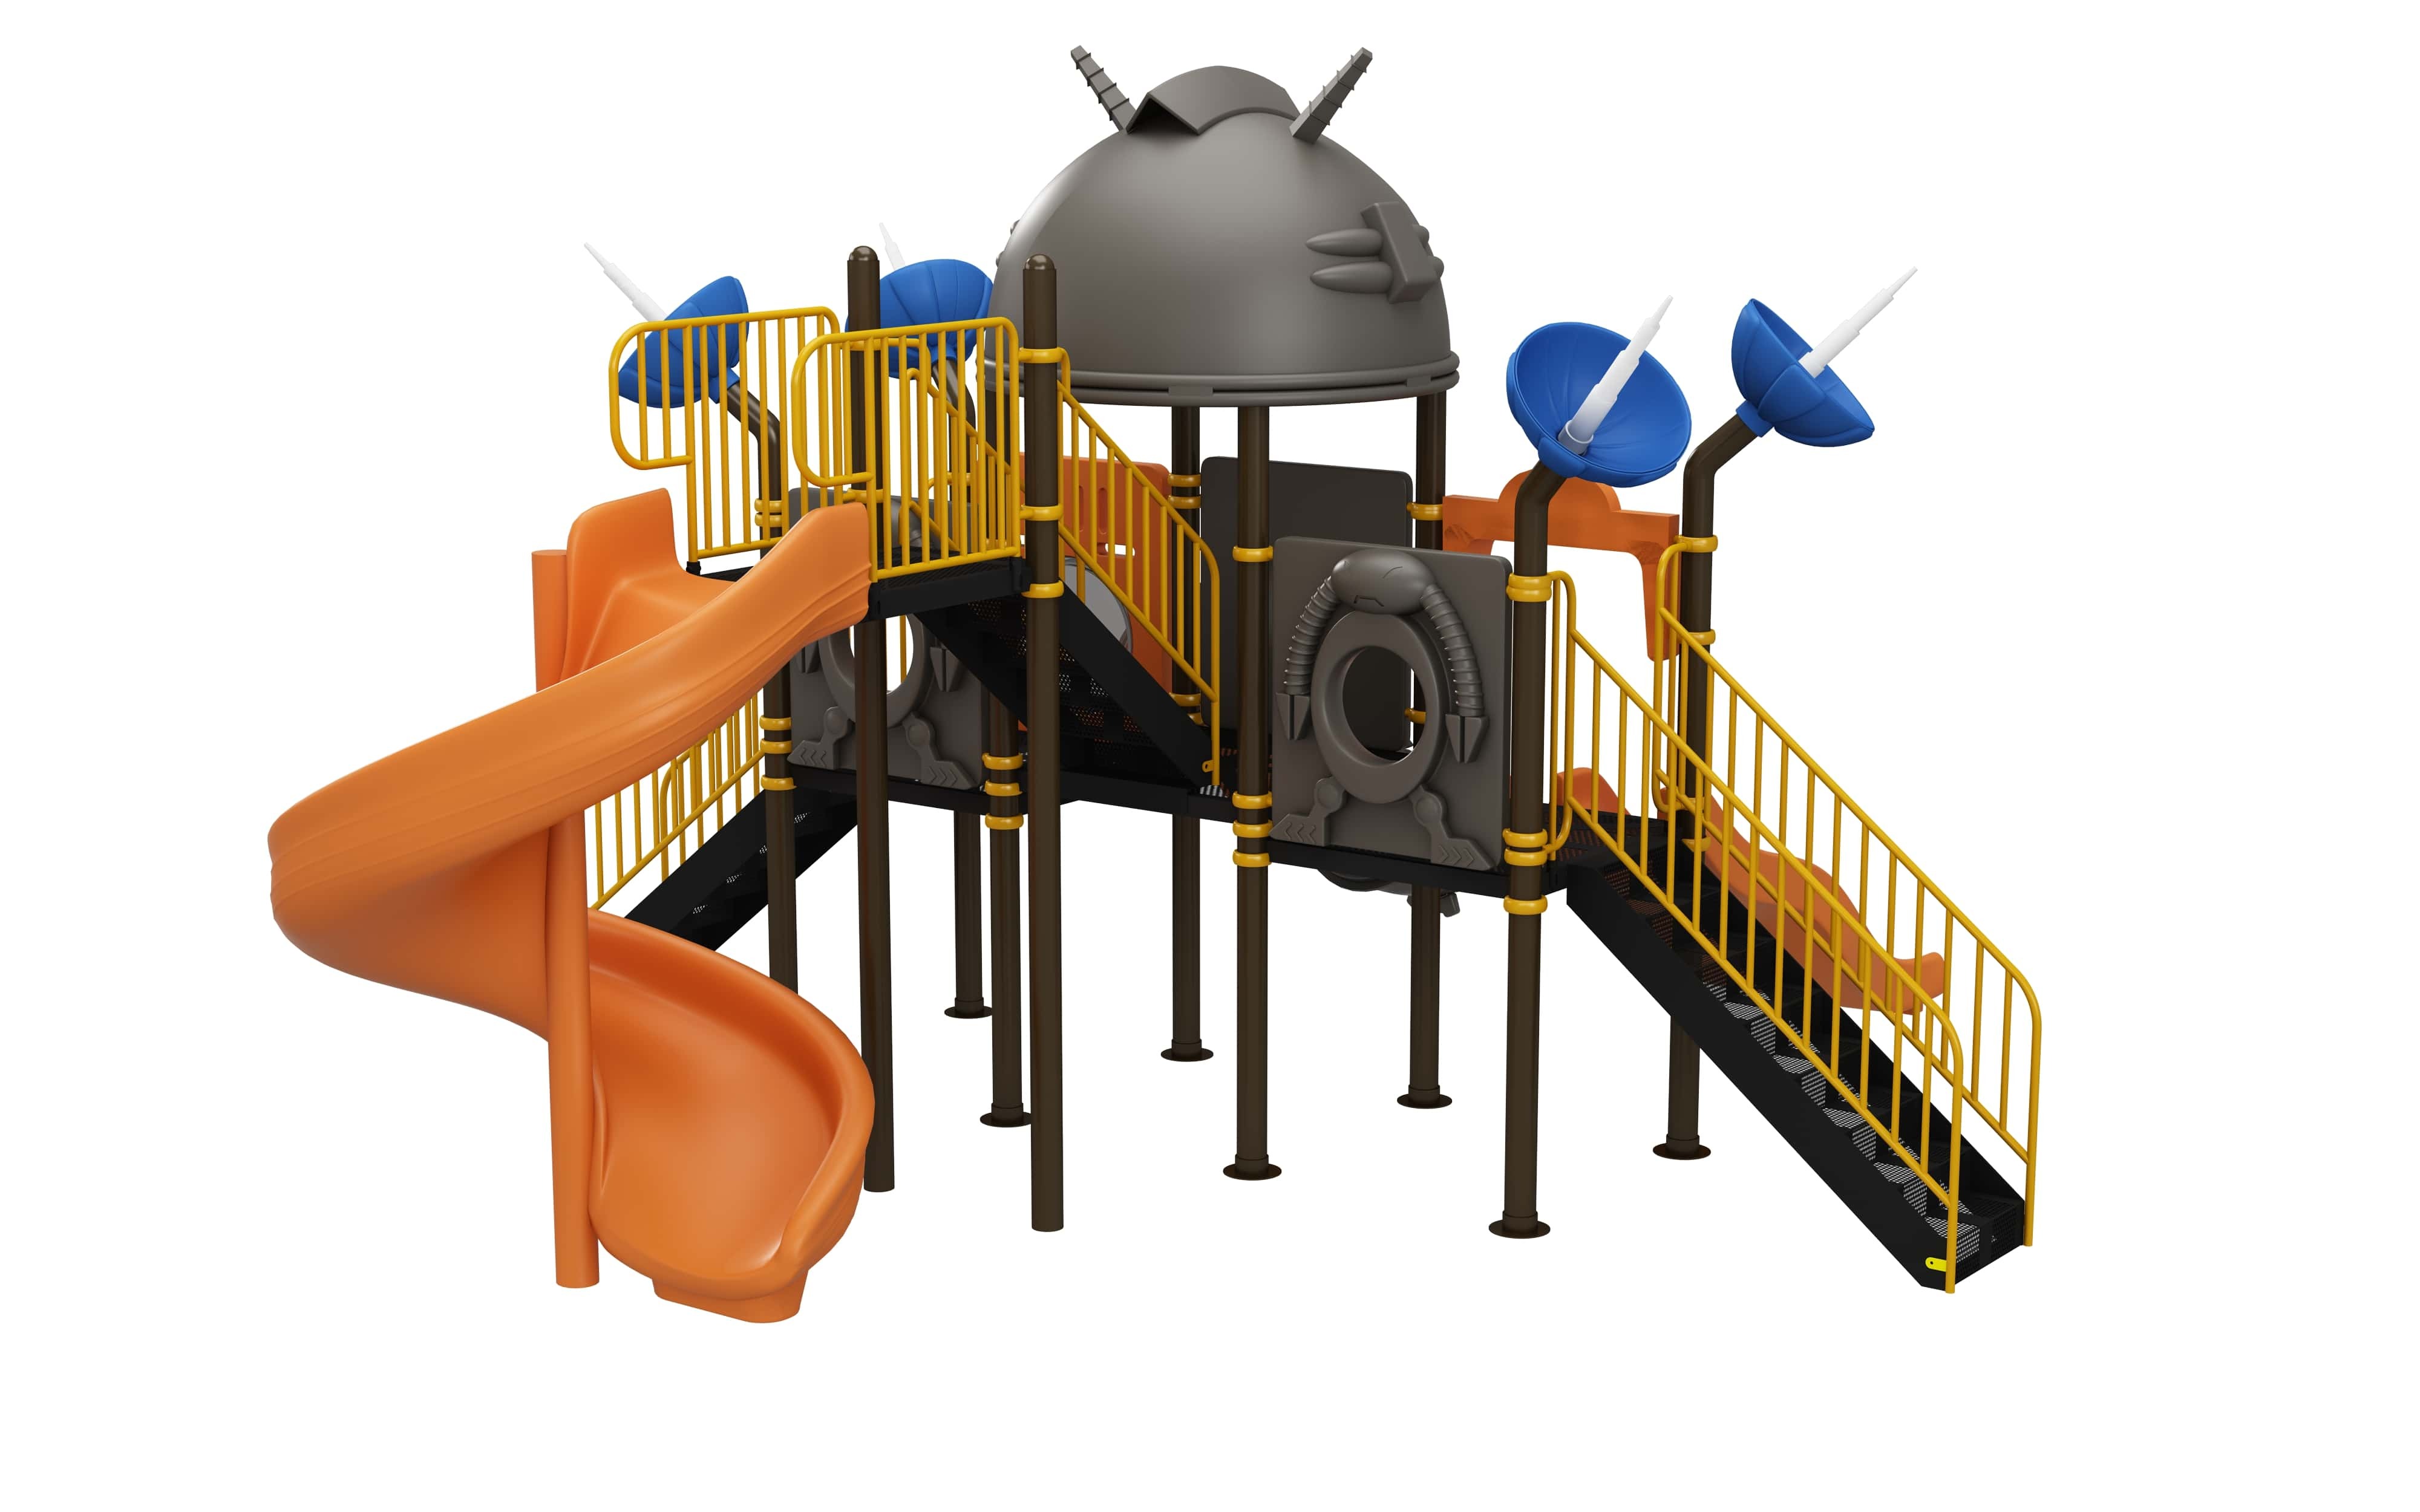 kids outdoor play equipment